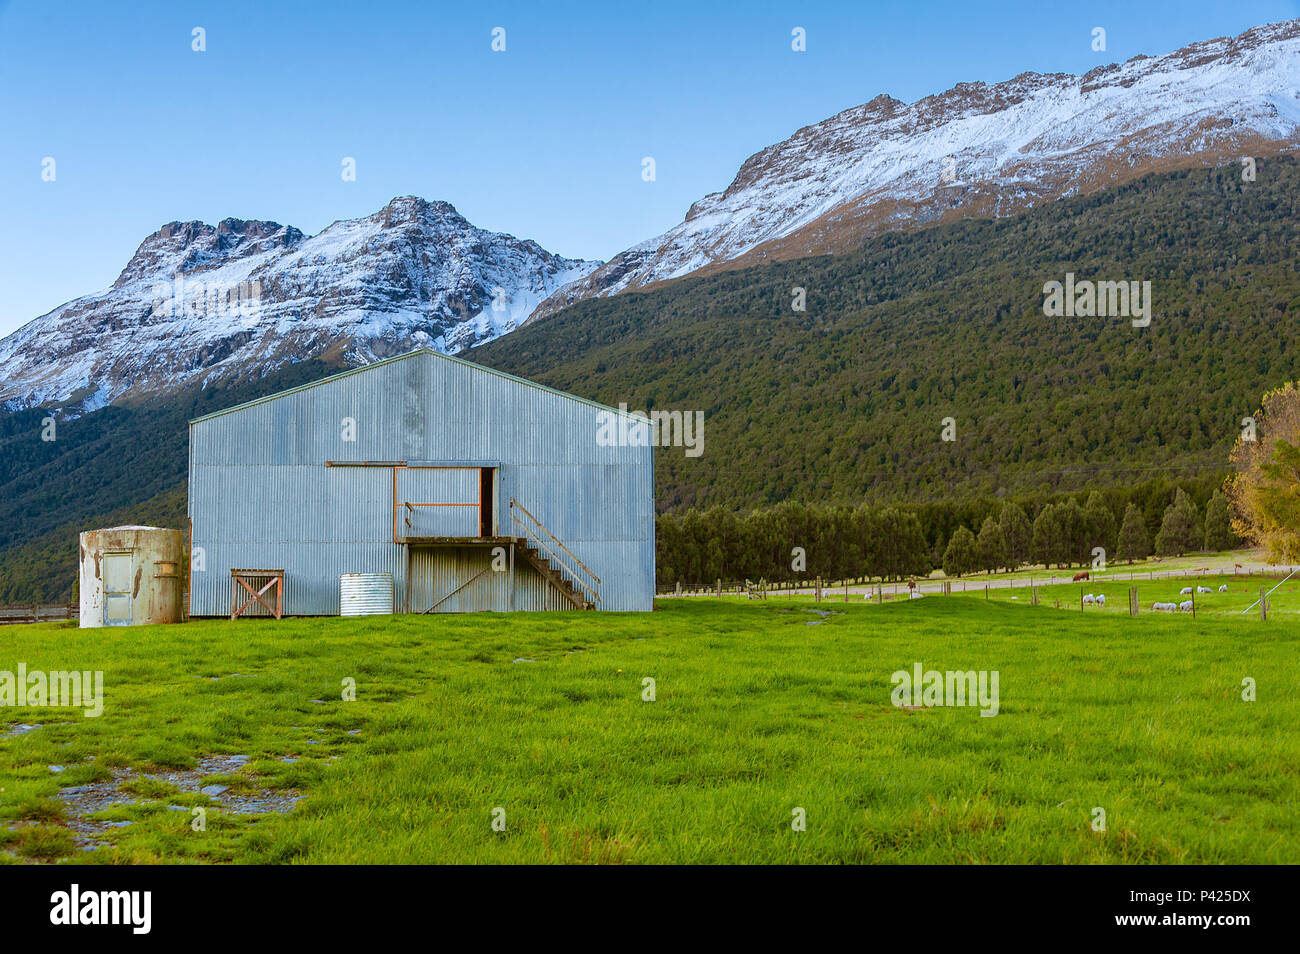 Eine Scheune auf einer Wiese in der Nähe von Bergen im Schnee bedeckt, und eine Herde Schafe weiden in der Nähe. Stockfoto